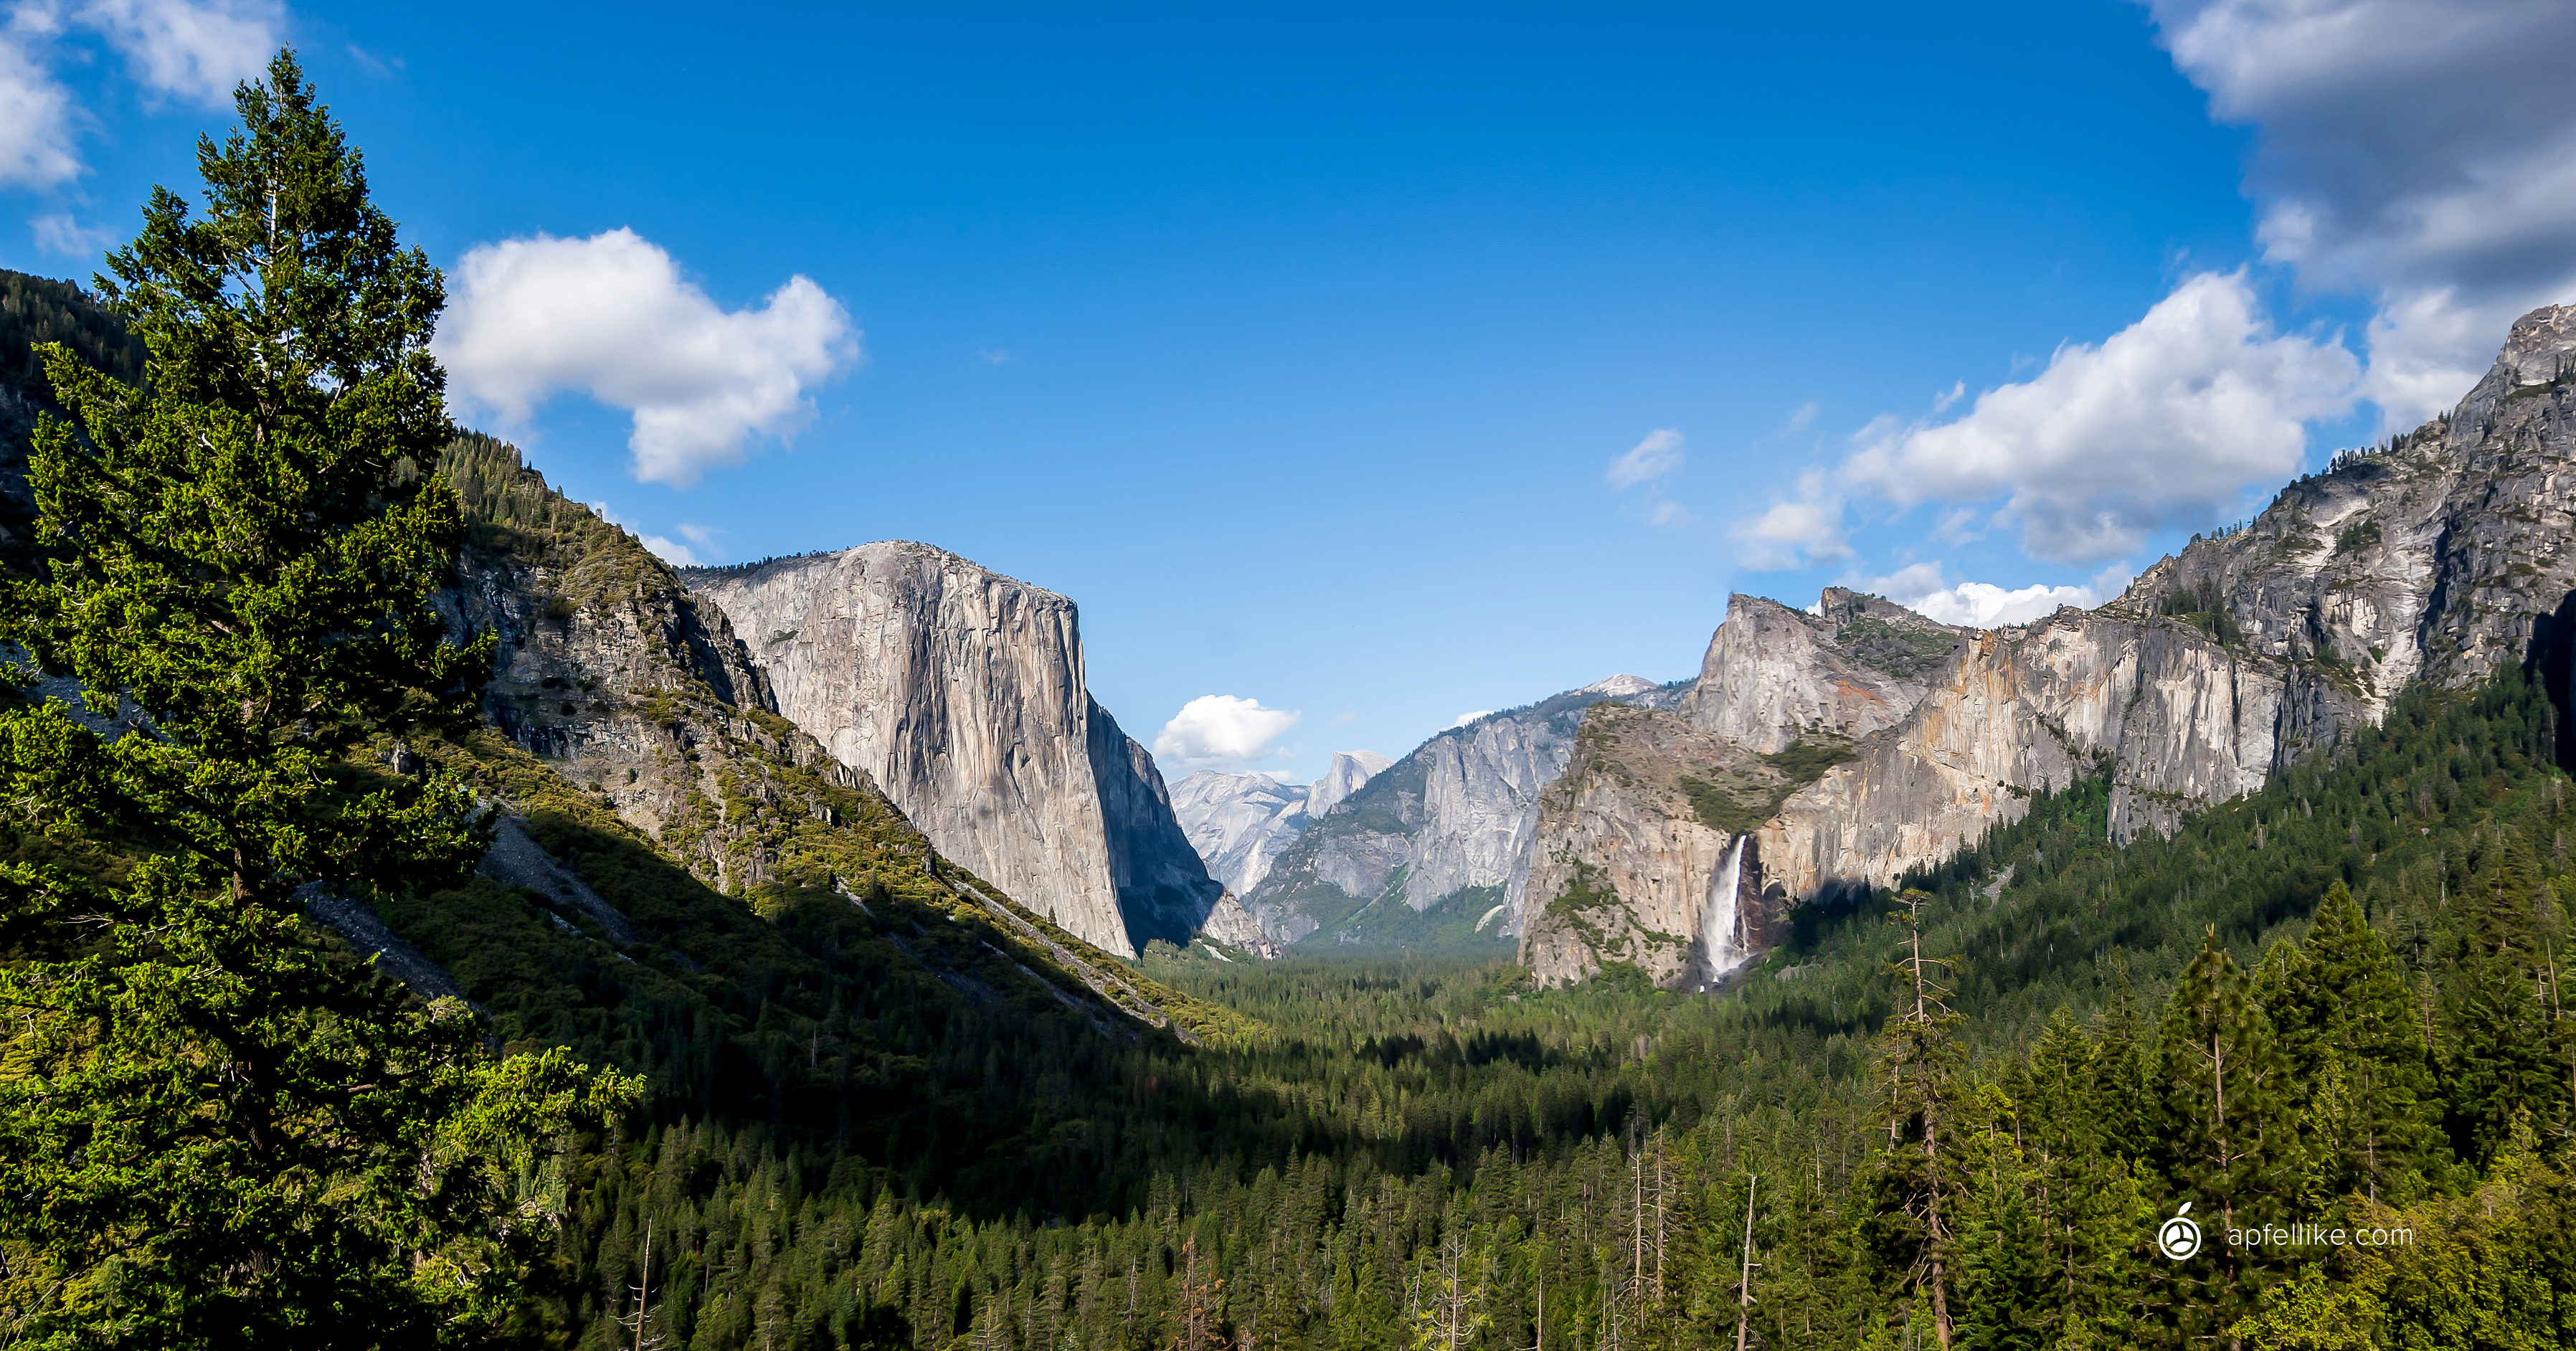 Mac OS Yosemite Wallpapers - Wallpaper Cave